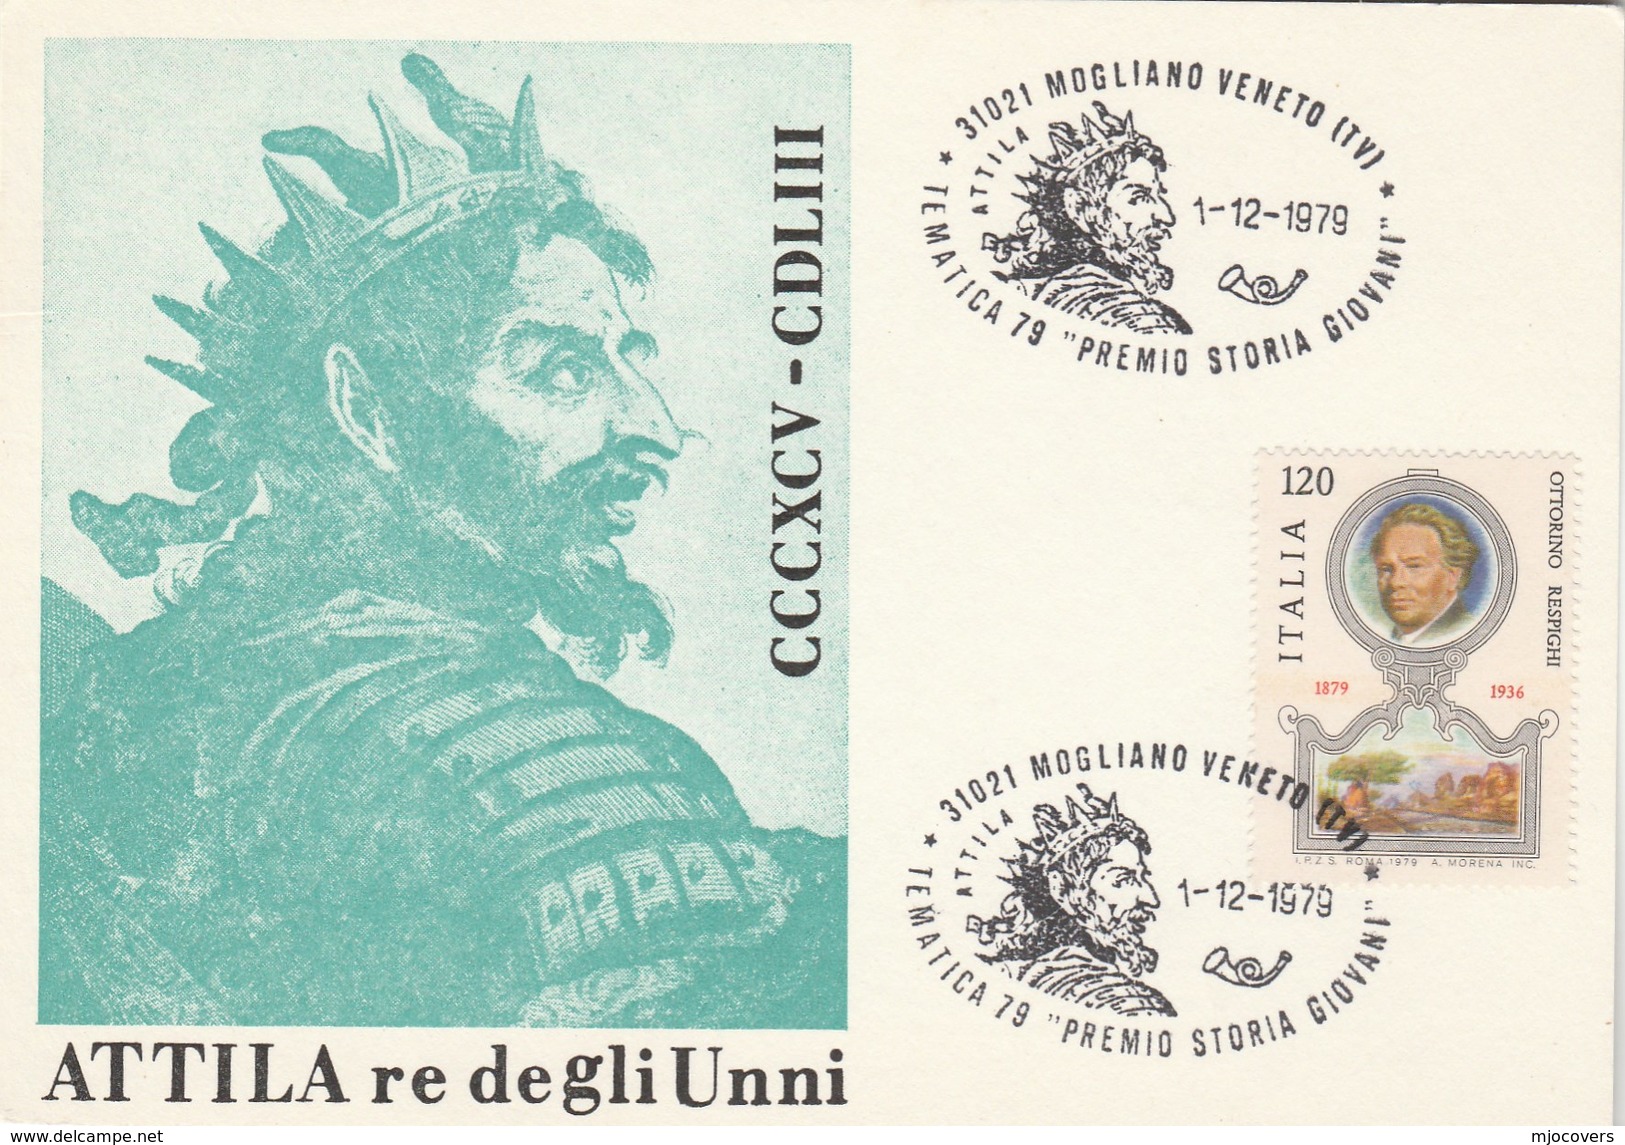 1979  Mogliano Veneto ATILLA OPERA EVENT COVER Card Italy Stamps Music Theatre - Music